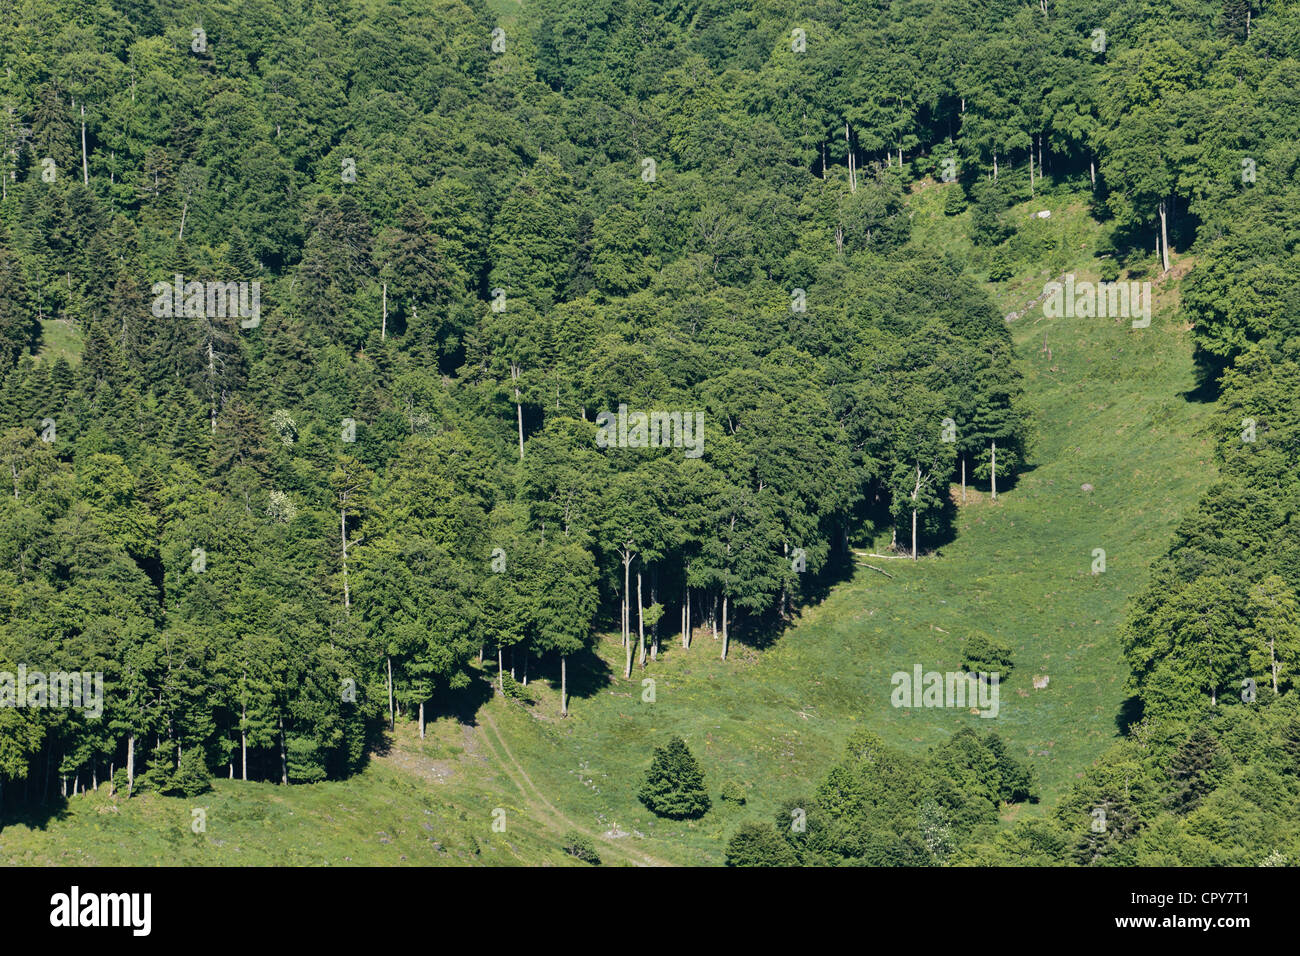 La compensazione e il bosco di latifoglie visto dalla vetta del Monte Cagire. Foto Stock